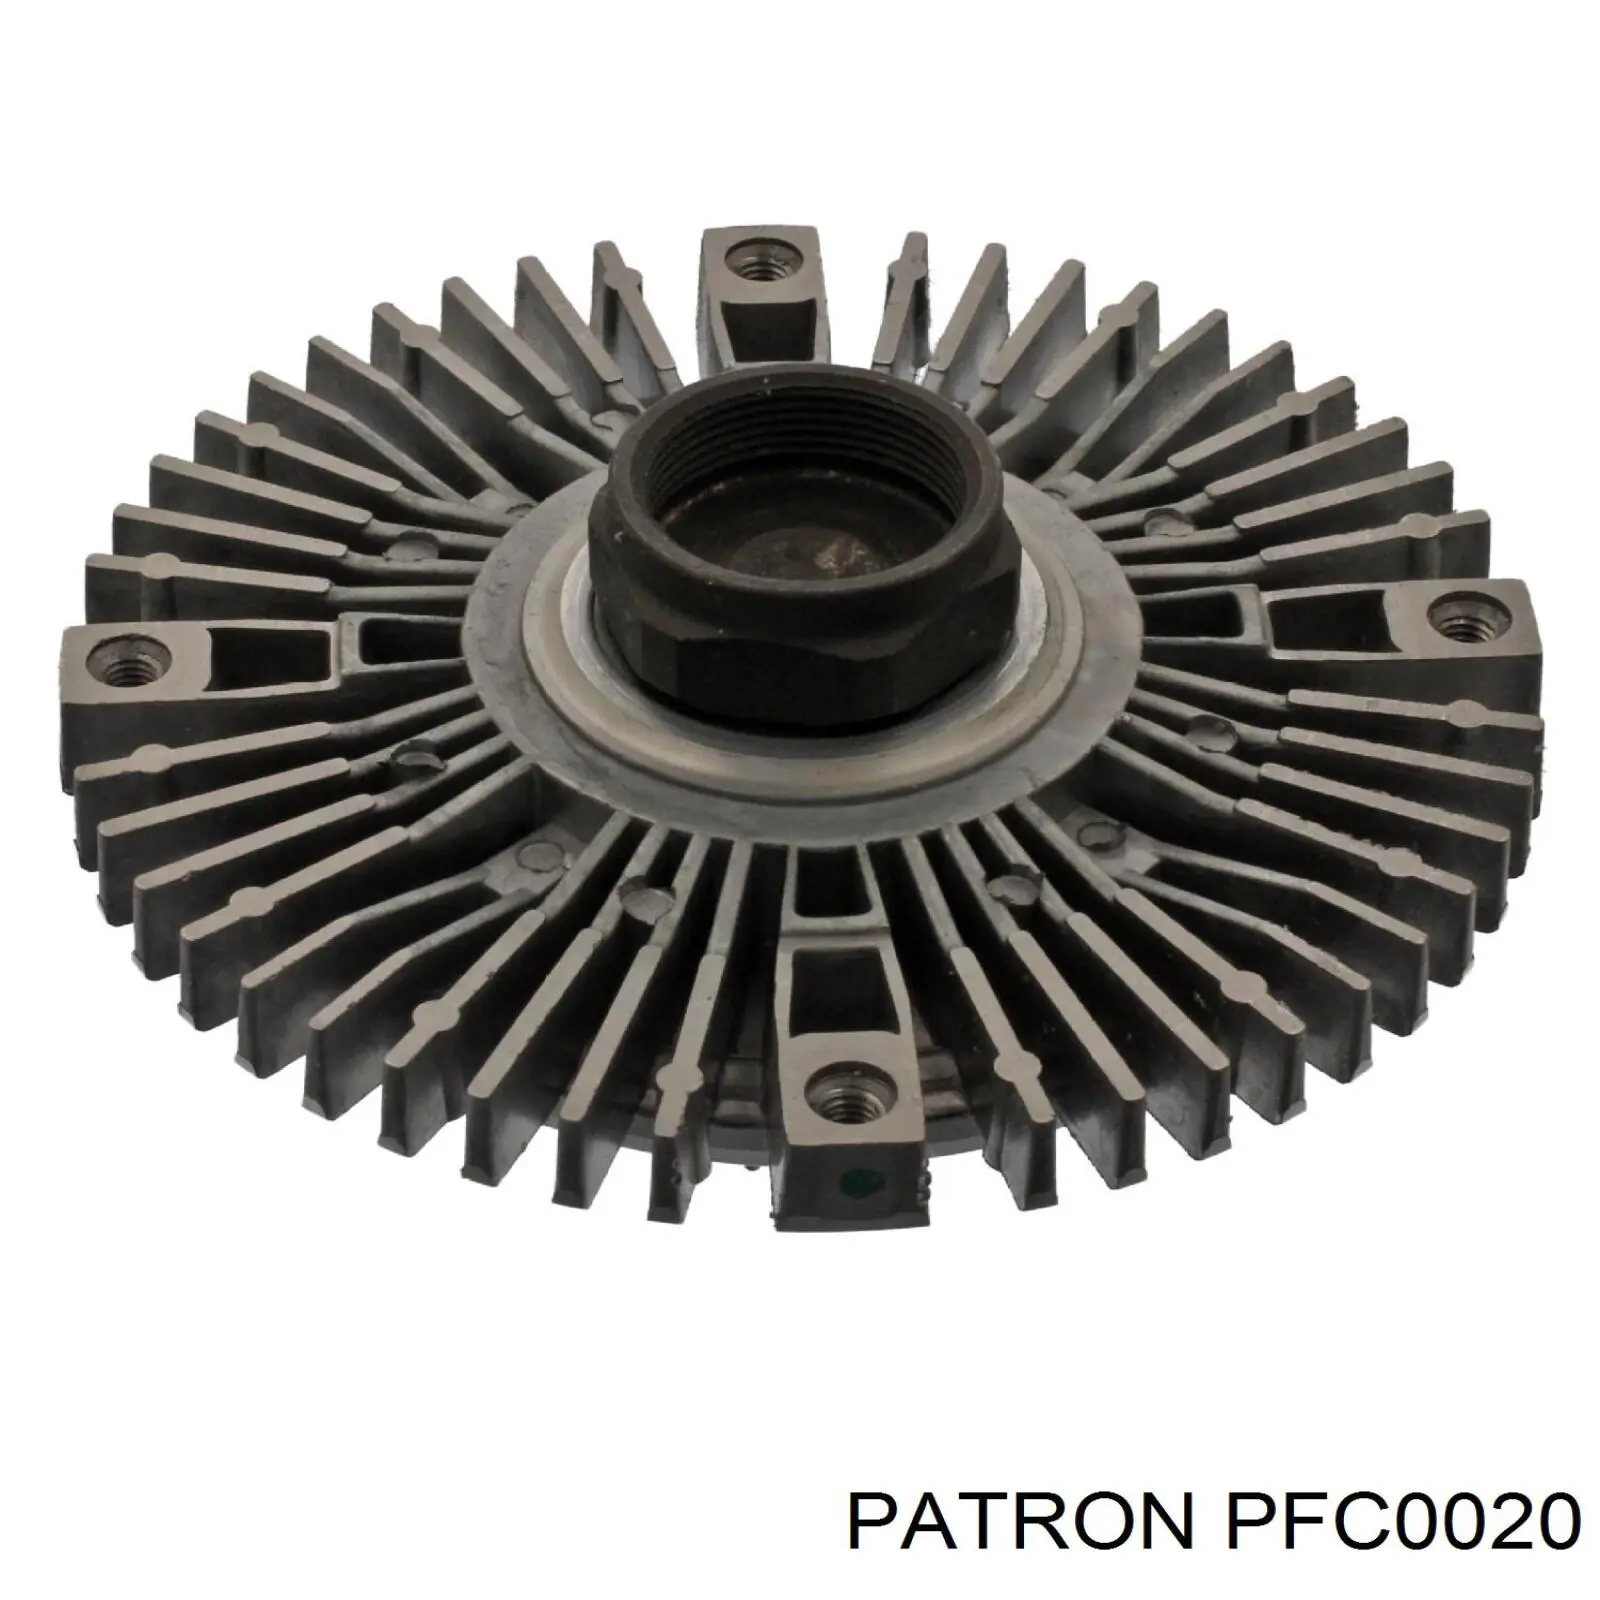 PFC0020 Patron вискомуфта (вязкостная муфта вентилятора охлаждения)